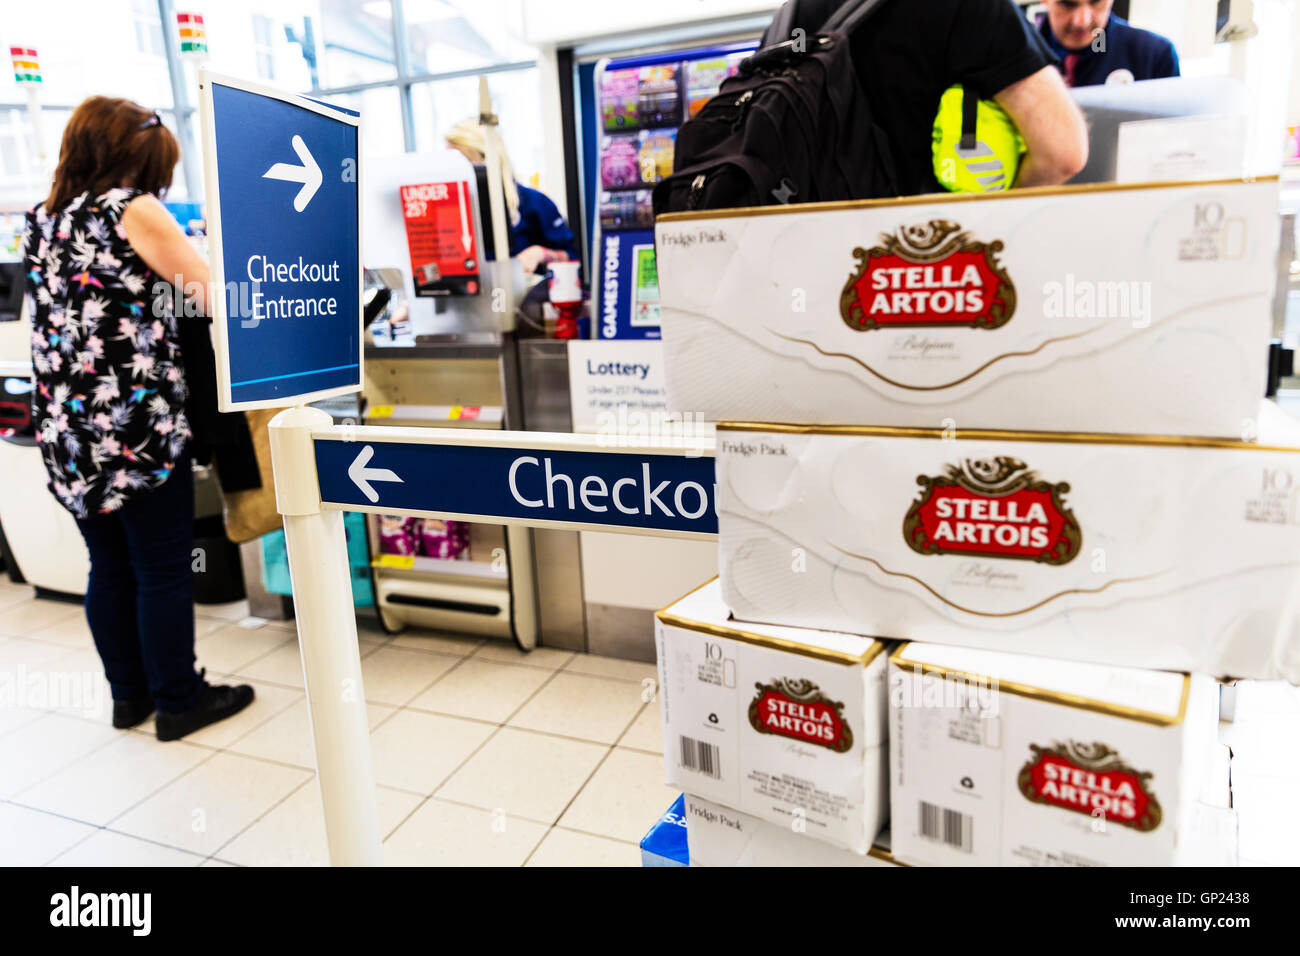 Supermarché commander panneau d'entrée de l'alcool près de commander des boîtes de bière Stella Artois achat impulsion UK Angleterre GO Banque D'Images